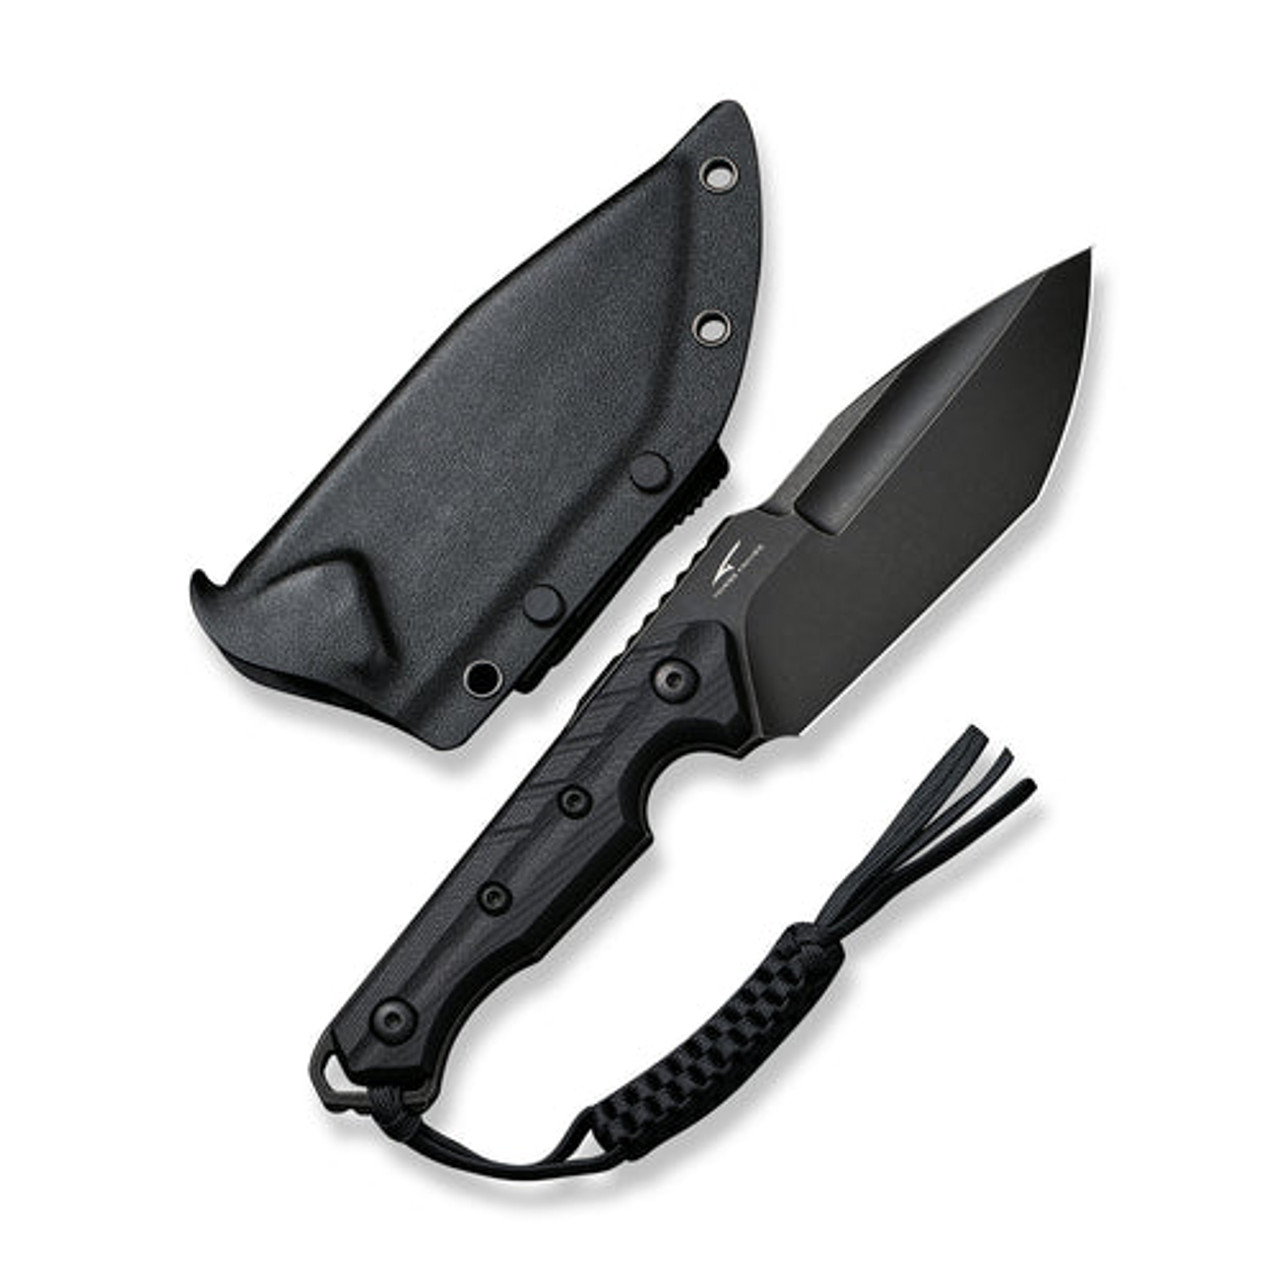 Civivi Maxwell Fixed Blade (C21040-1) 4.74" Black D2 Spear Point Plain Blade, Black G10 Handle